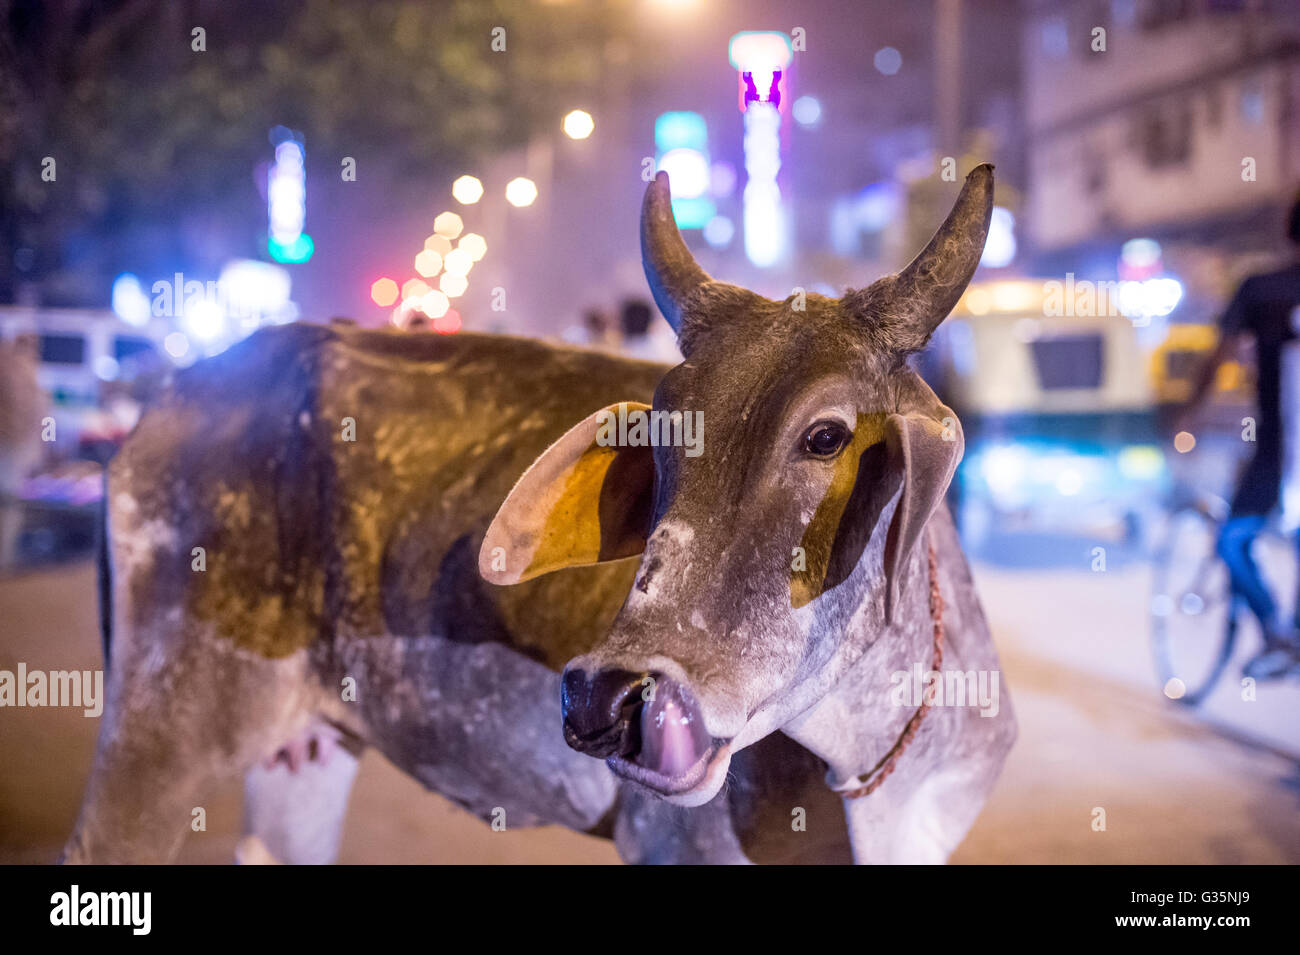 Eine Kuh leckt seine Lippen in Delhi, Indien.  Bildnachweis: Euan Cherry Stockfoto